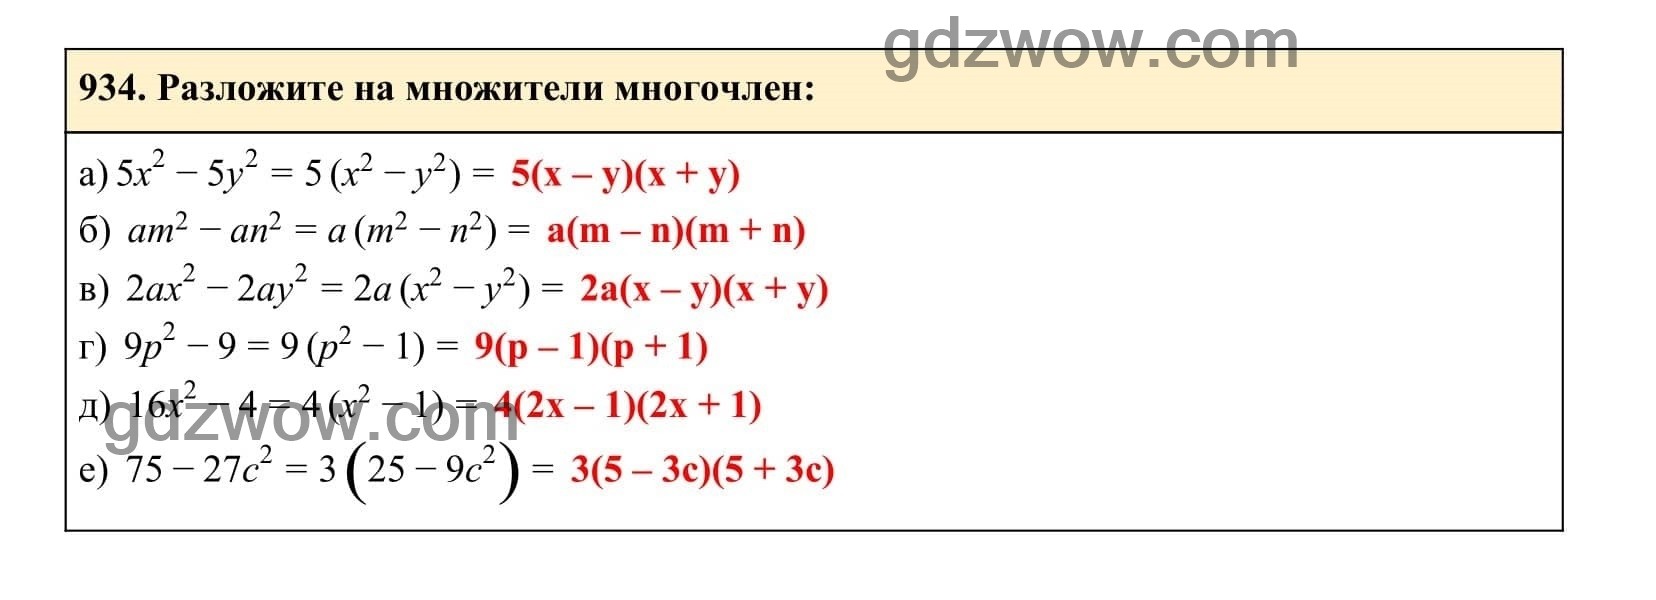 Упражнение 934 - ГДЗ по Алгебре 7 класс Учебник Макарычев (решебник) - GDZwow